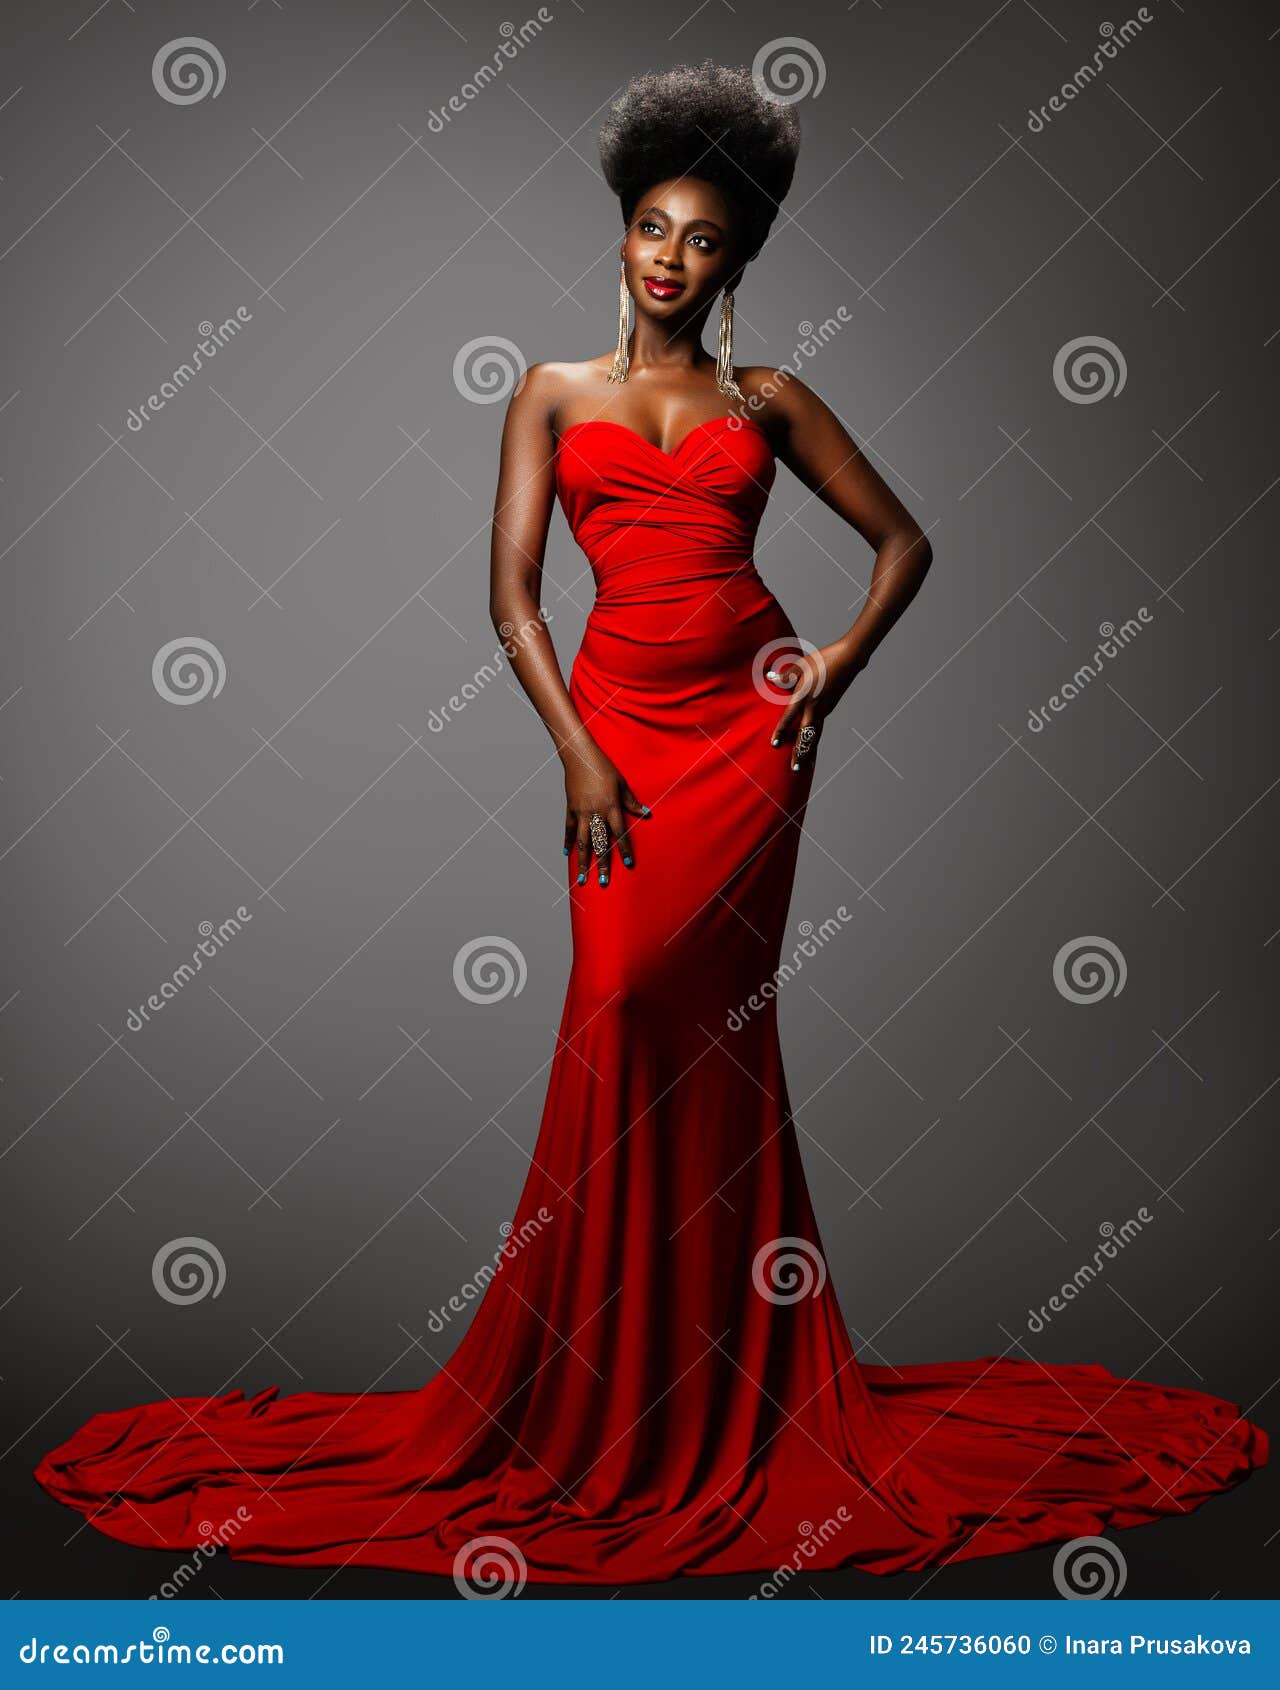 Girl Brunette Evening Red Dress Makeup Stock Photo 1143192872 | Shutterstock